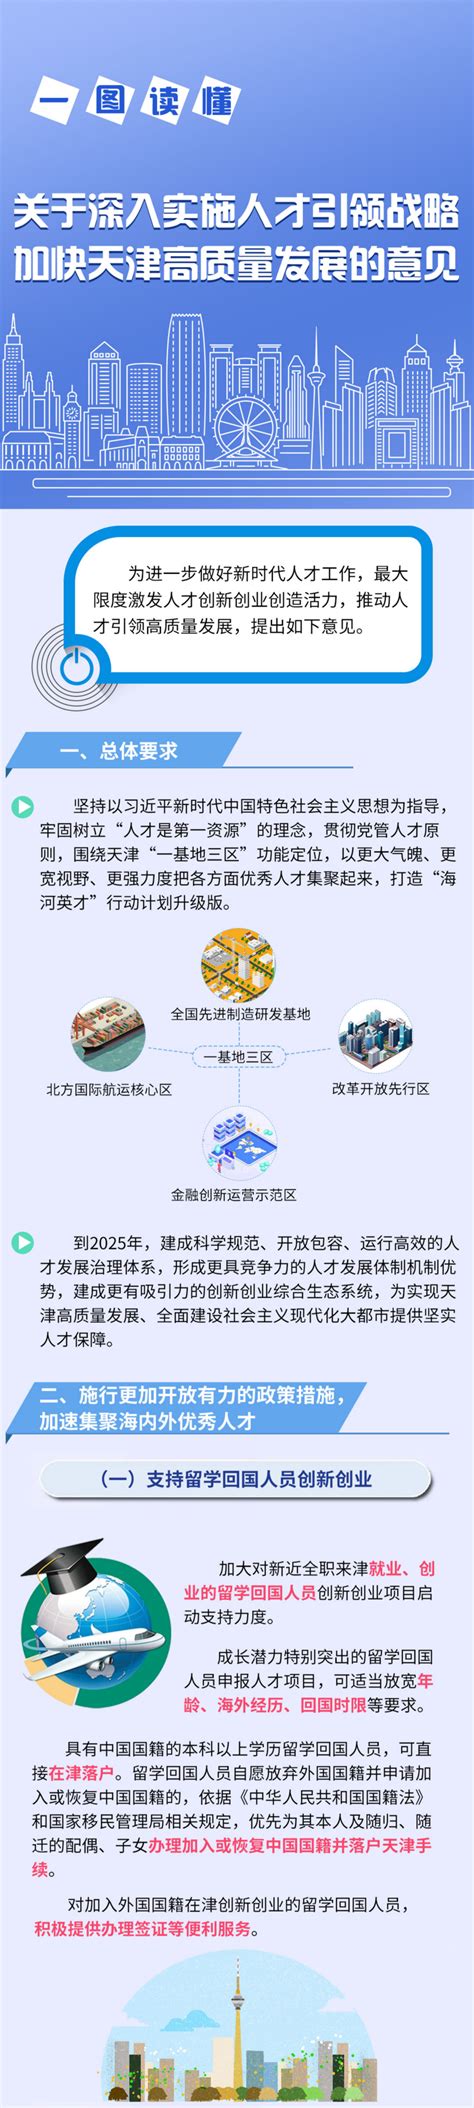 天津人社局网天津市人力资源和社会保障局网站